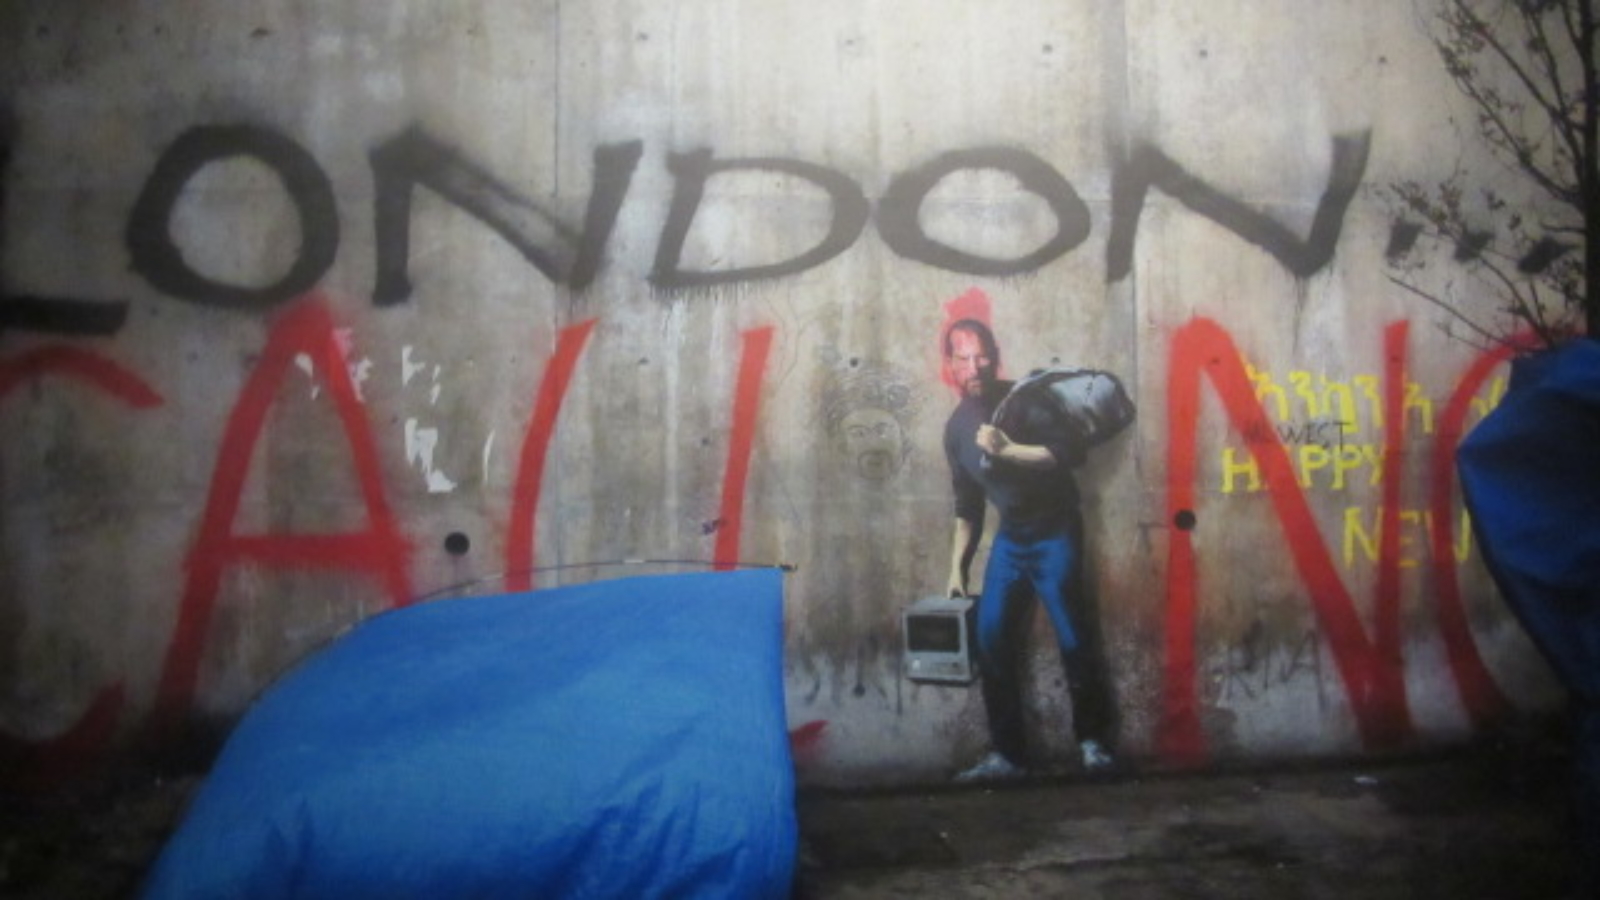 Steve Jobs. Nesta obra Banksy coloca Steve Jobs num campo de refugiados em uma série.